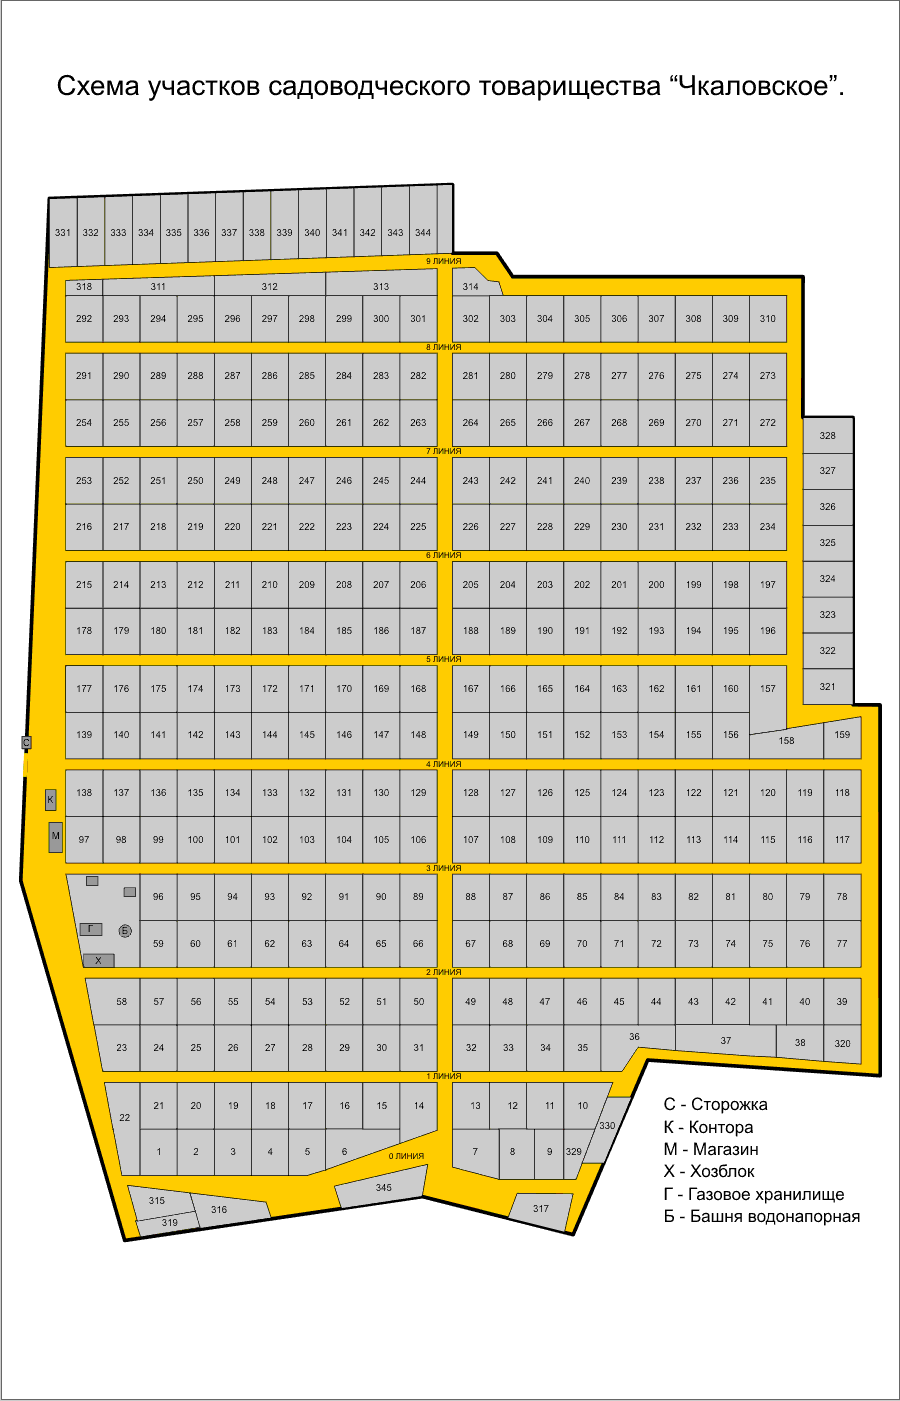 Схема СНТ Члаловское (69 кБ)